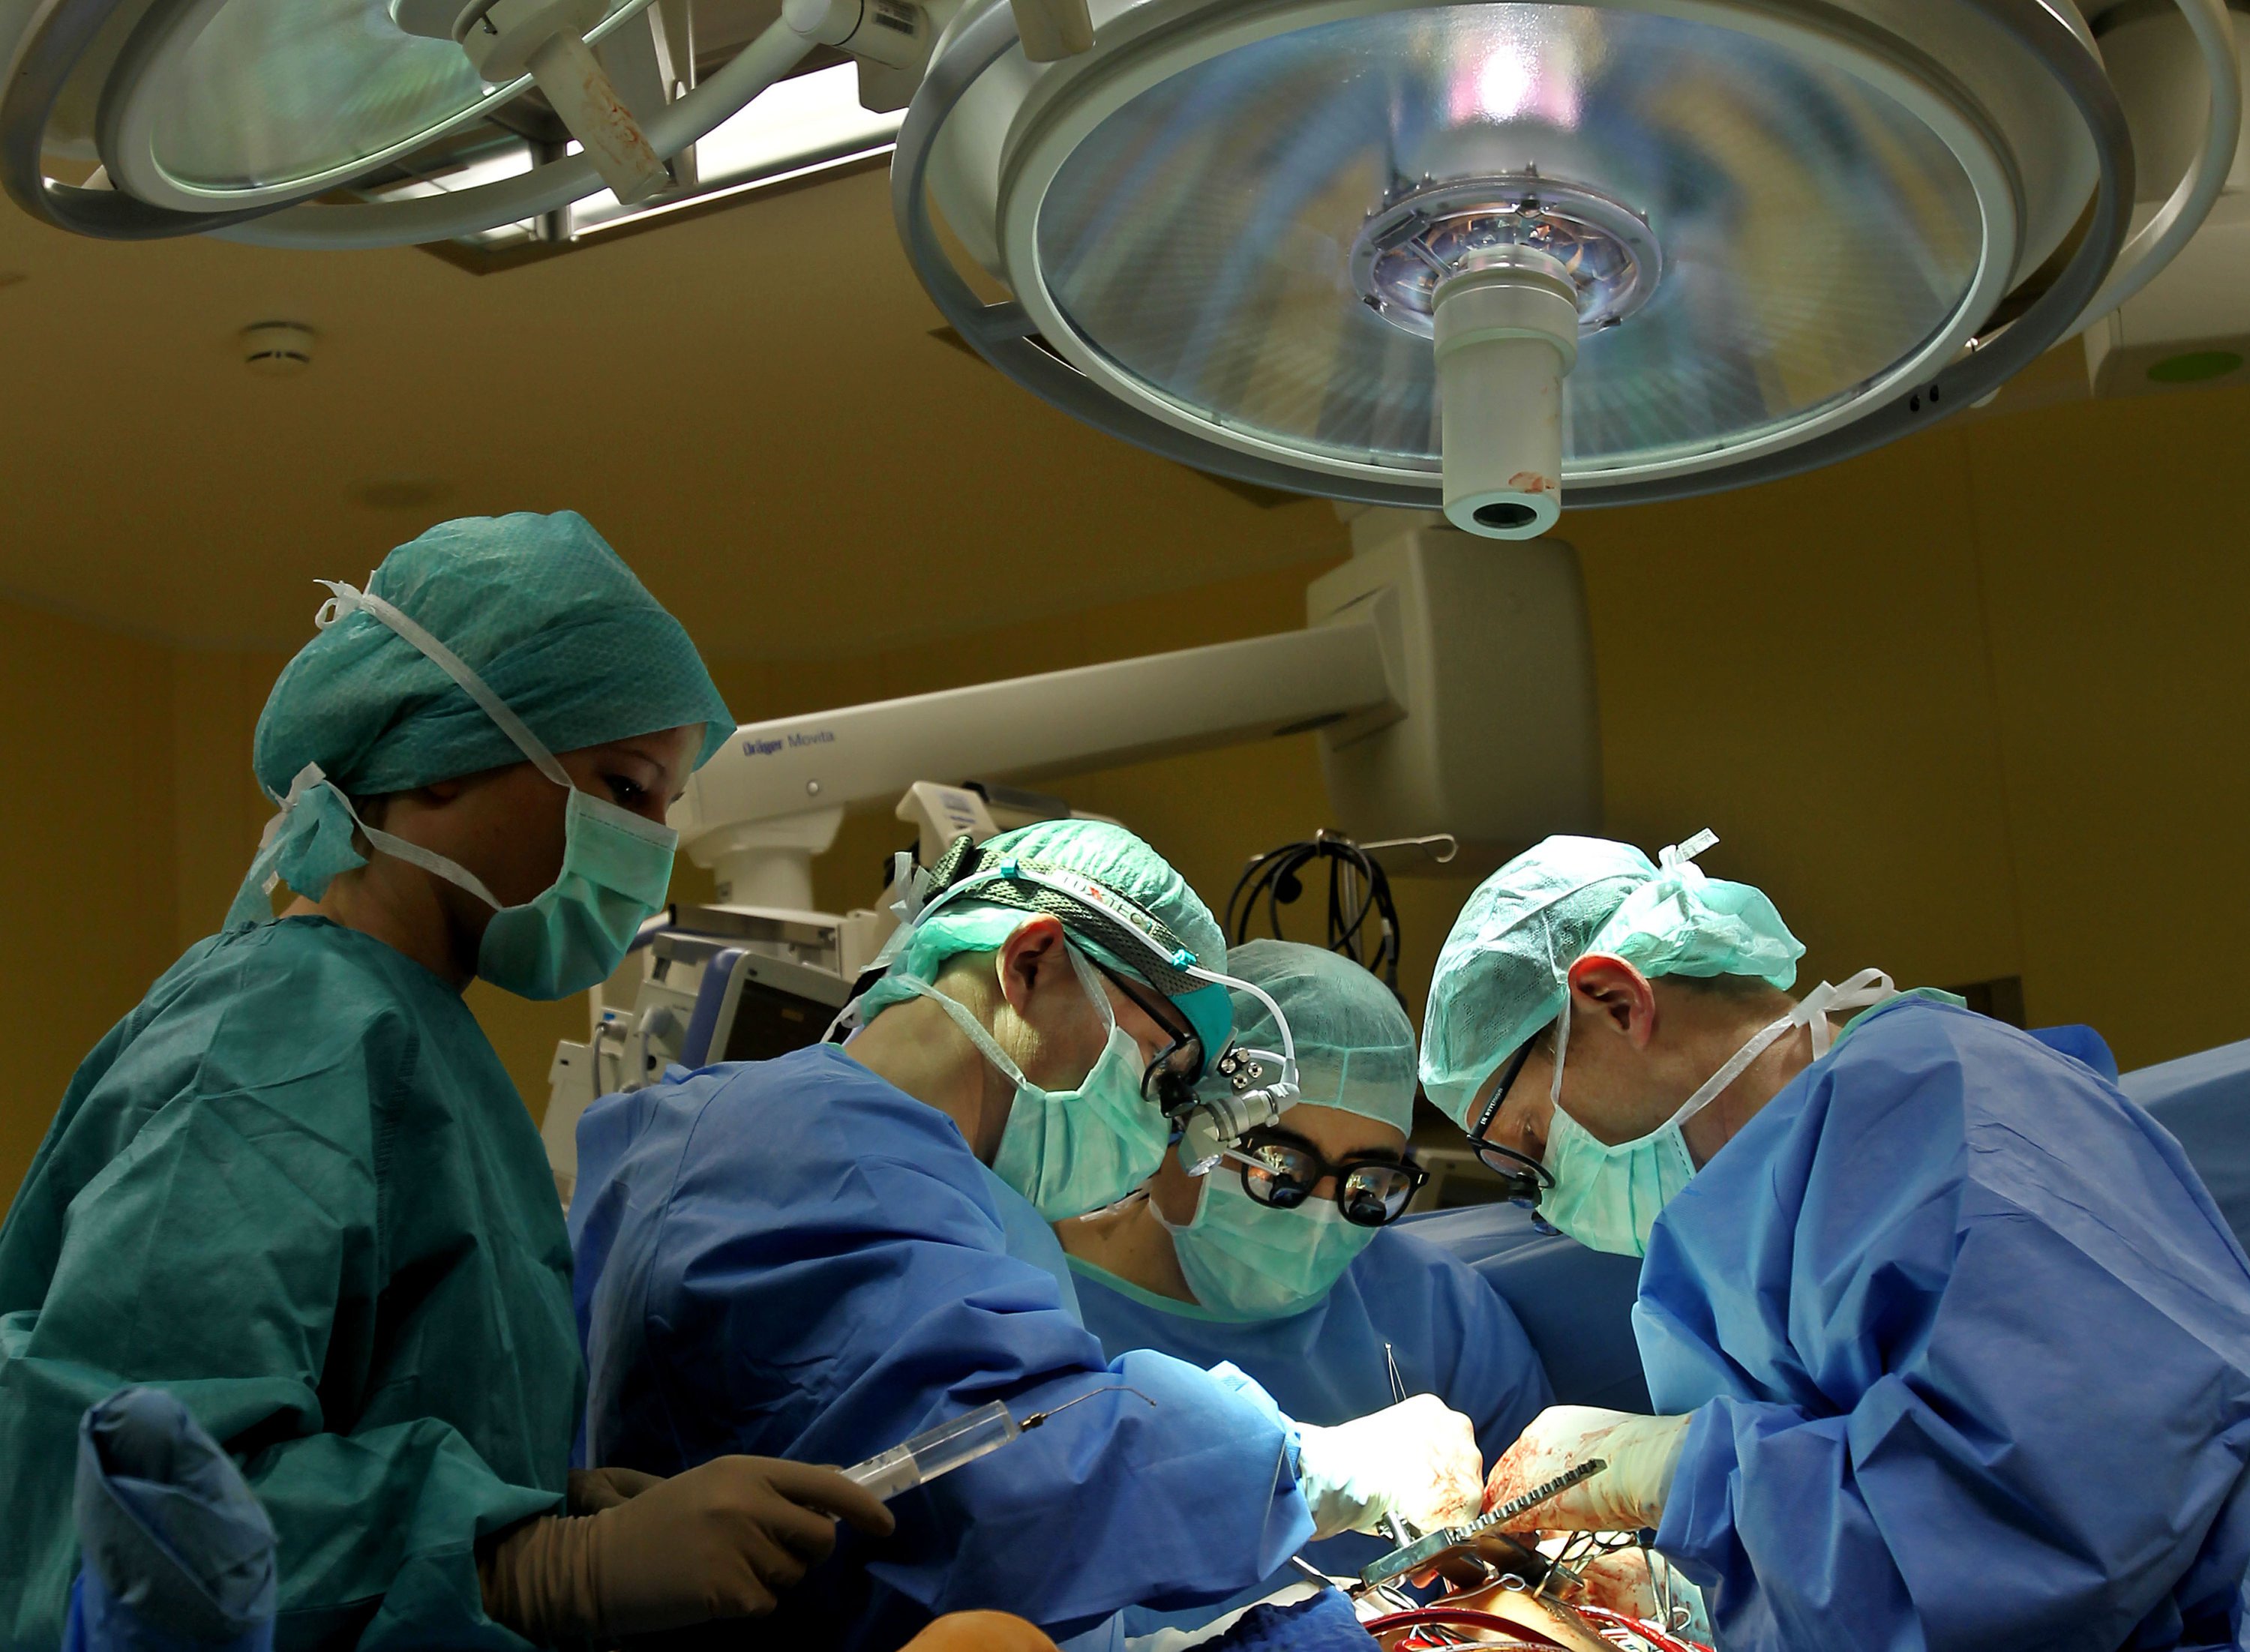 Bislang wurden Transplantationen nur mit lebendigen Herzen von hirntoten Patienten durchgeführt. Dank der neuen tragbaren Herzmaschine können auch reanimierte Herzen von Kreislauftoten transplantiert werden. 